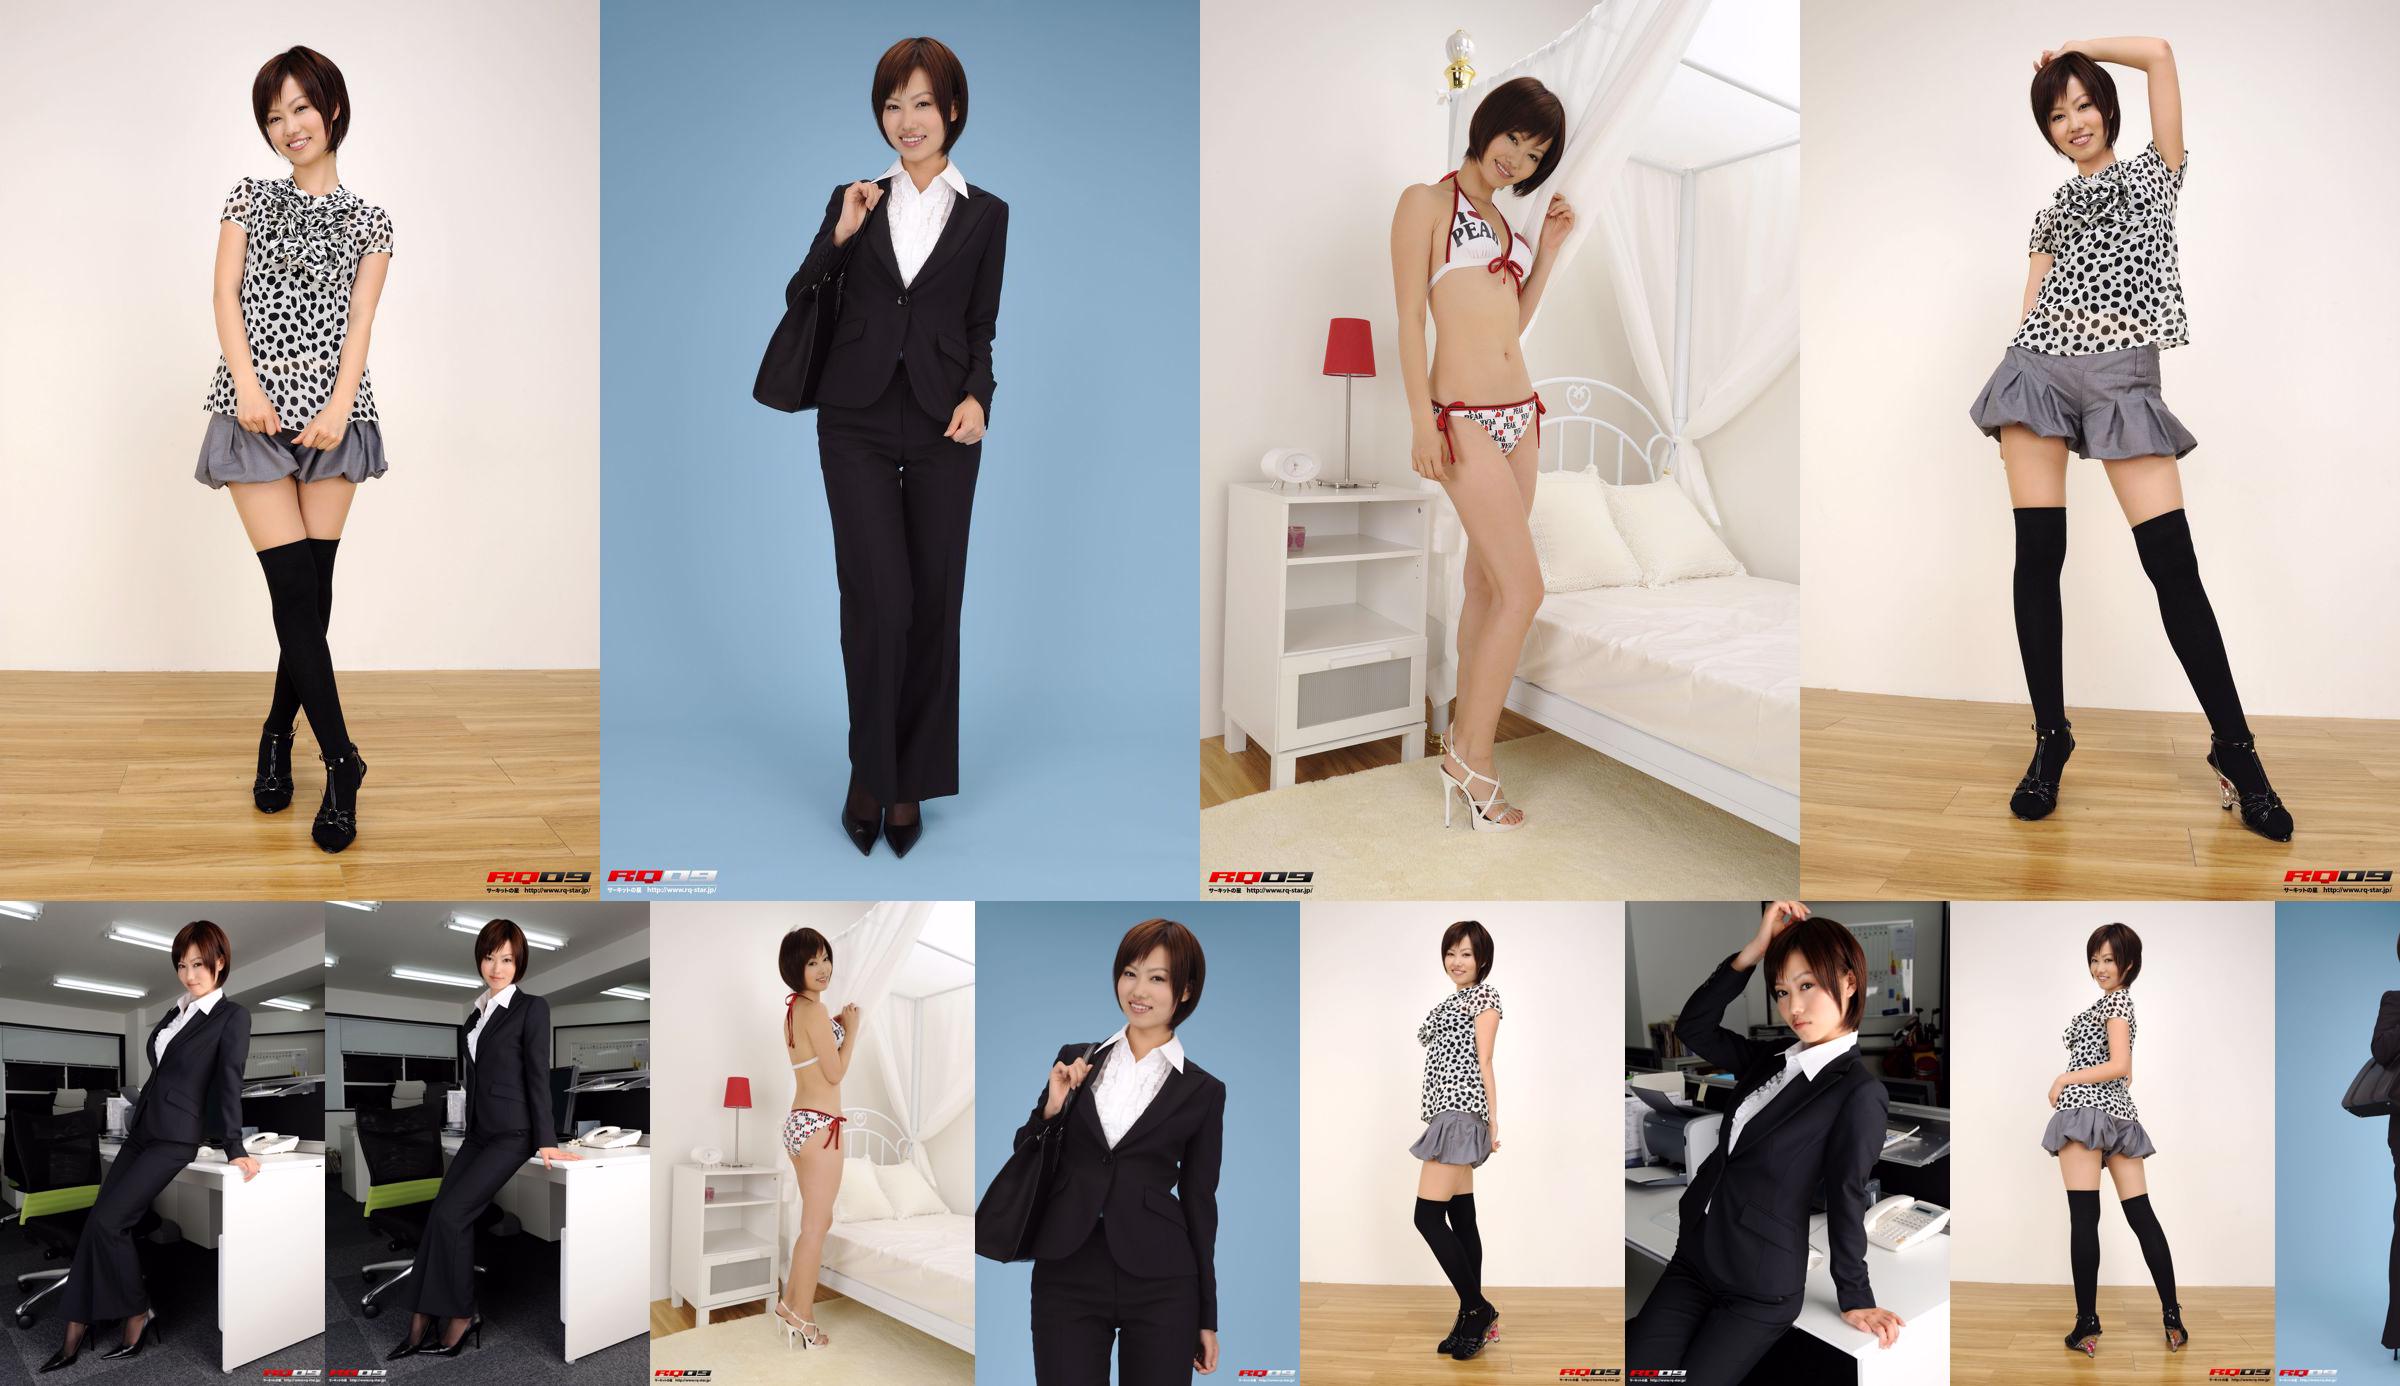 [RQ-STAR] NO.00155 Fujimura Misato / Fujimura Edison Recruit Style Office Beauty-Serie No.82ca98 Seite 4